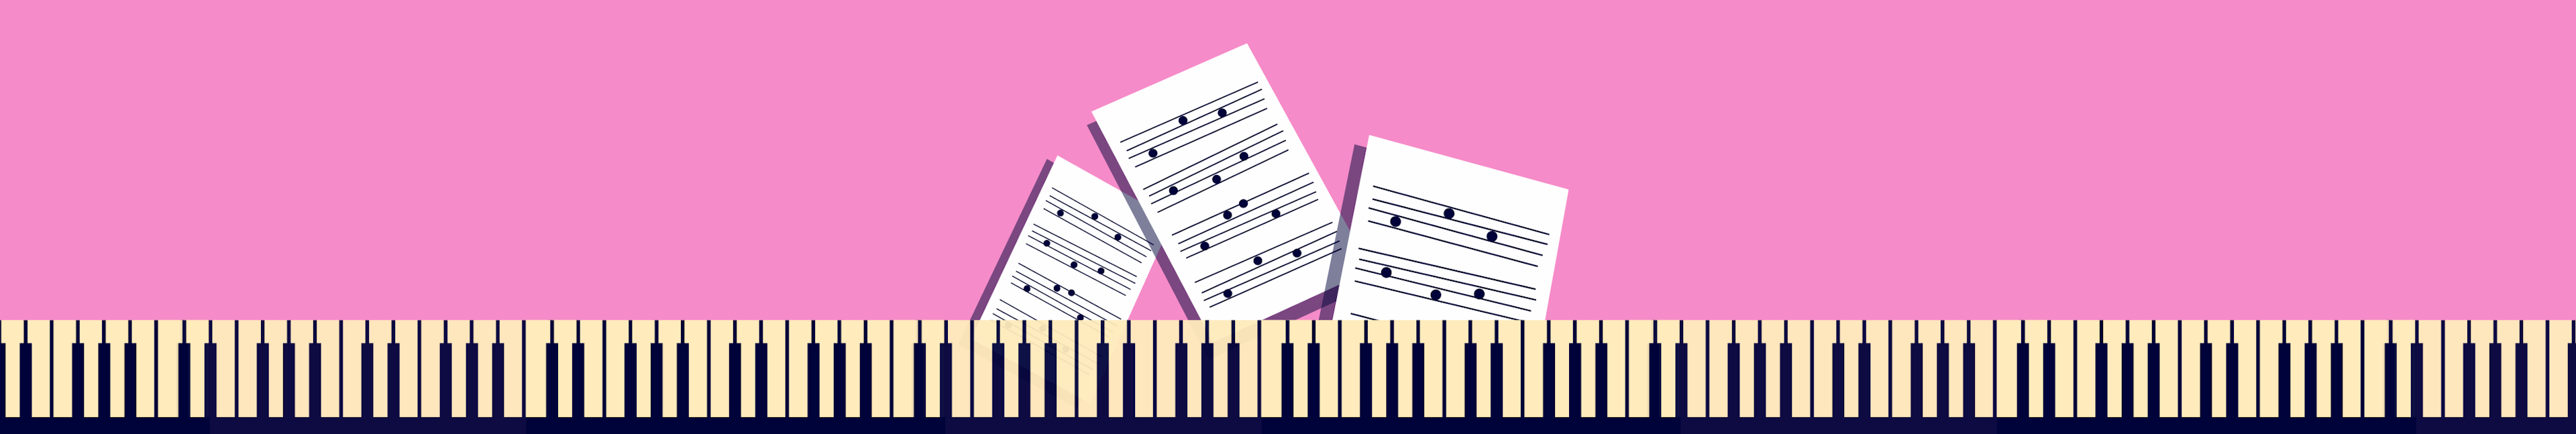 鋼琴學習教程和練習